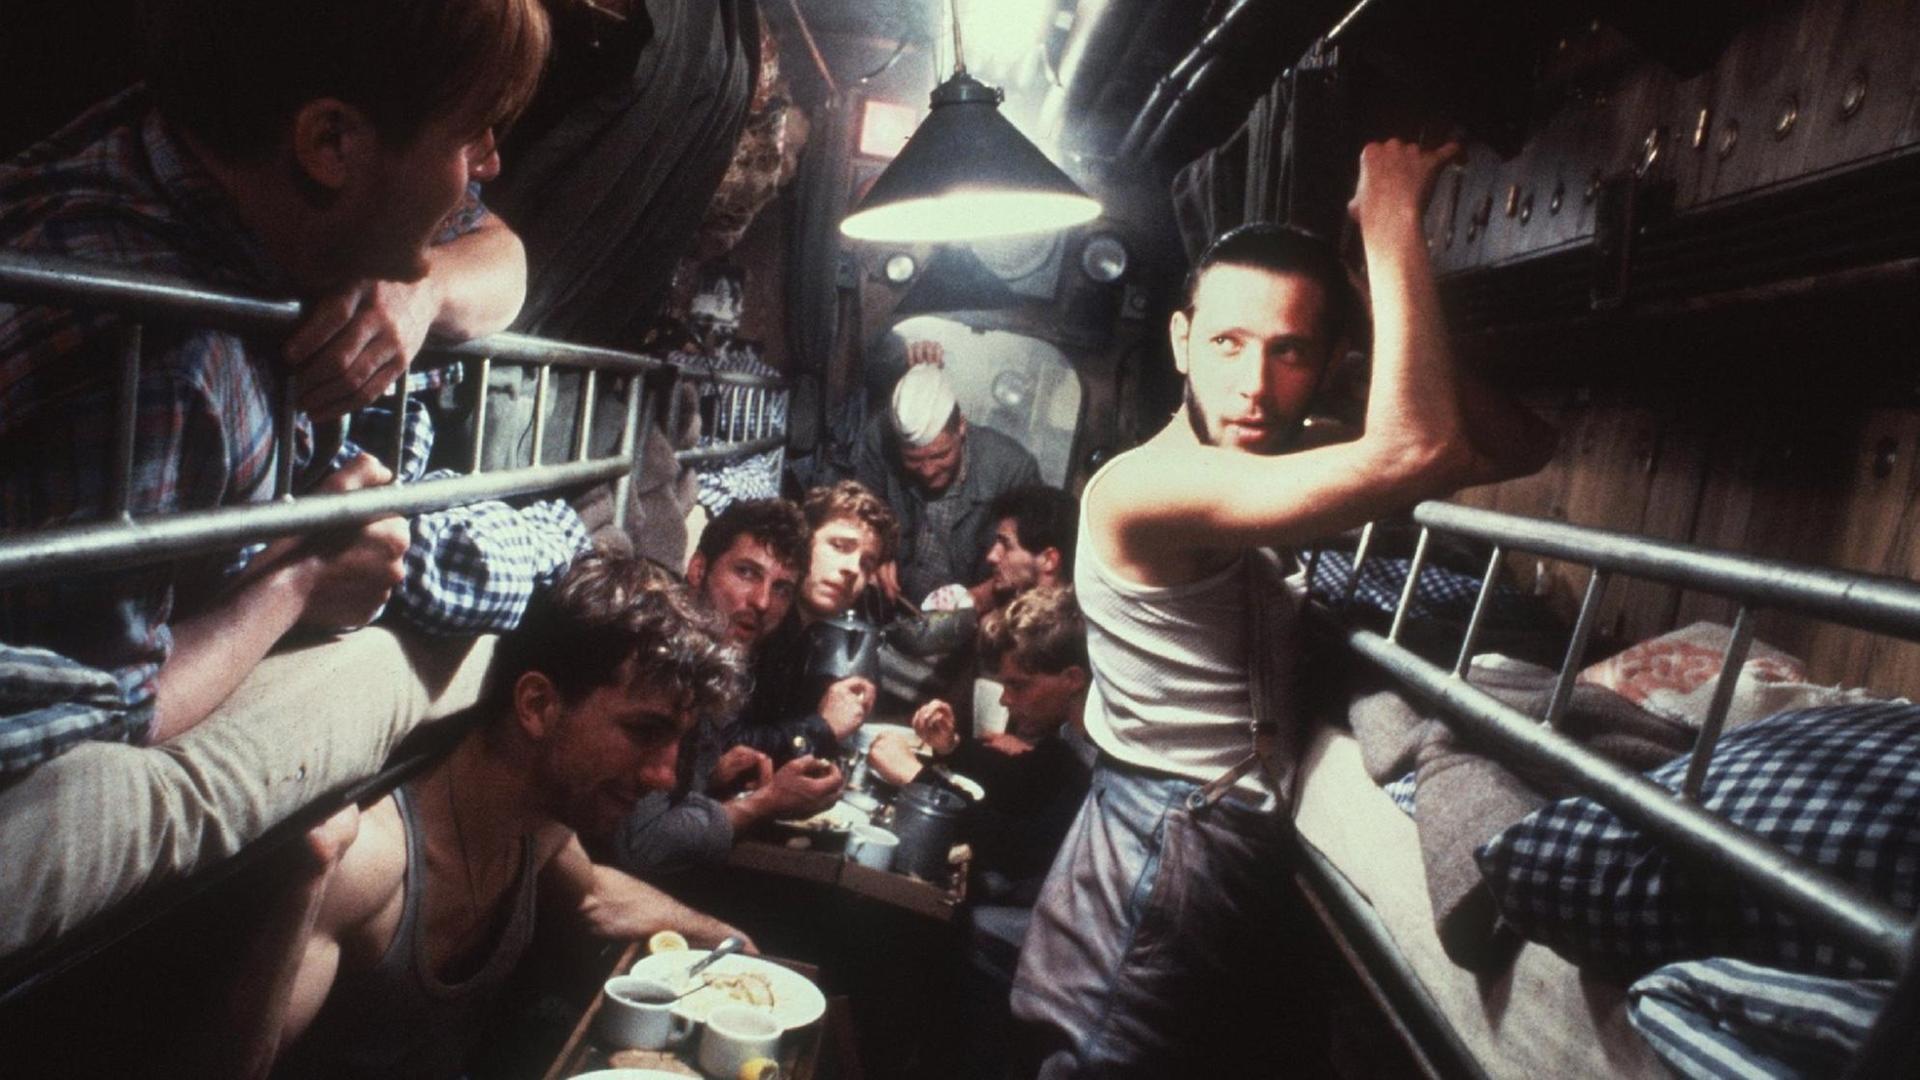 Blick in den Mannschaftsraum des U-Boots in einer Szene des Films "Das Boot", in dem das Schicksal der Mannschaft an Bord der "U 96" im Zweiten Weltkrieg geschildert wird.